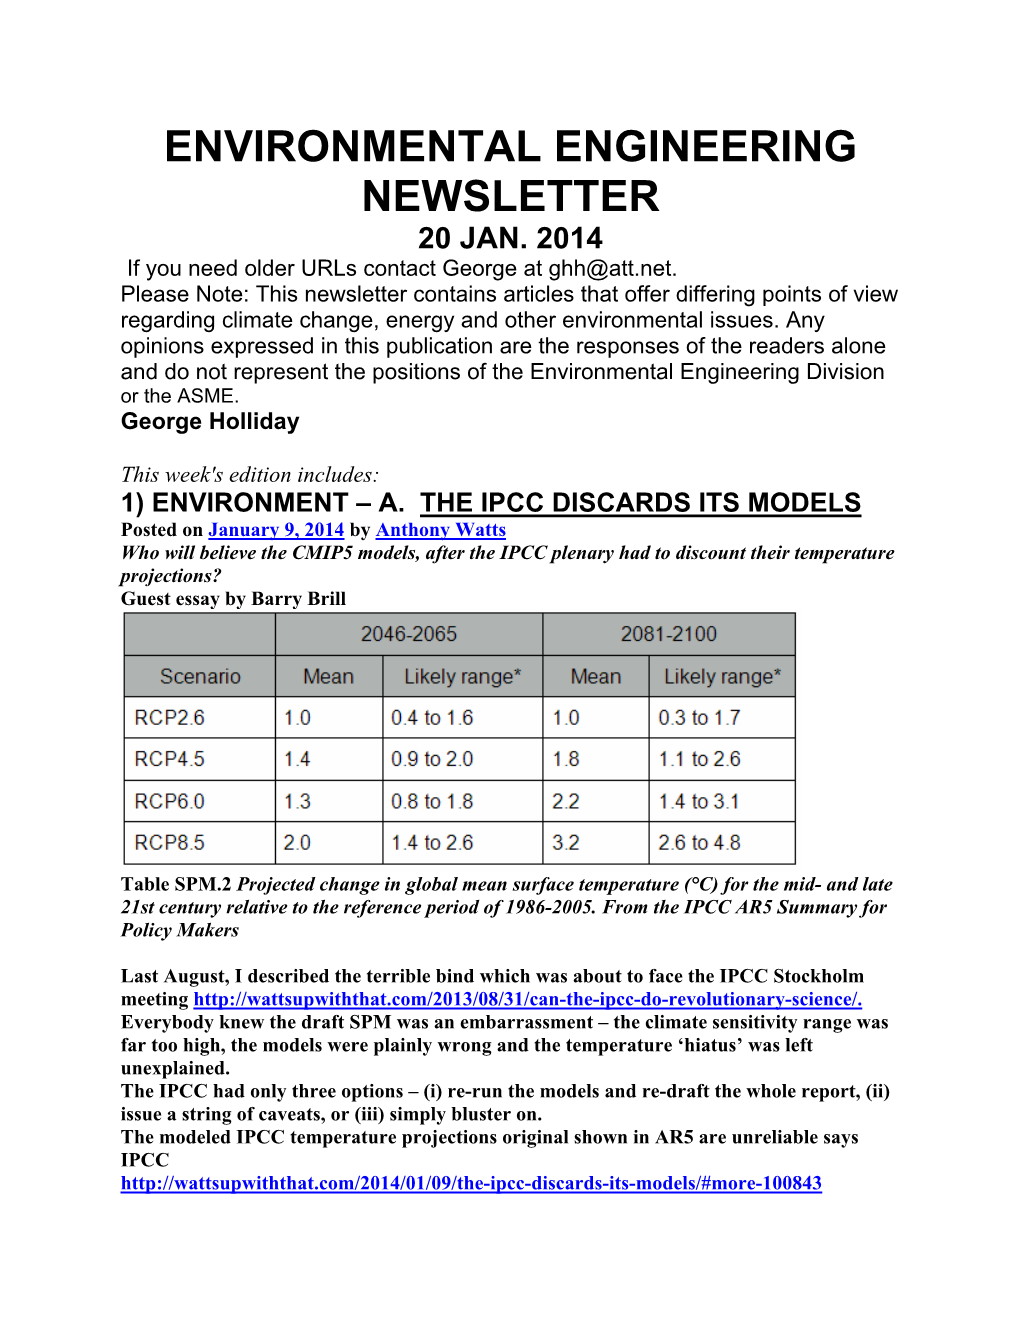 Environmental Engineering Newsletter 20 Jan